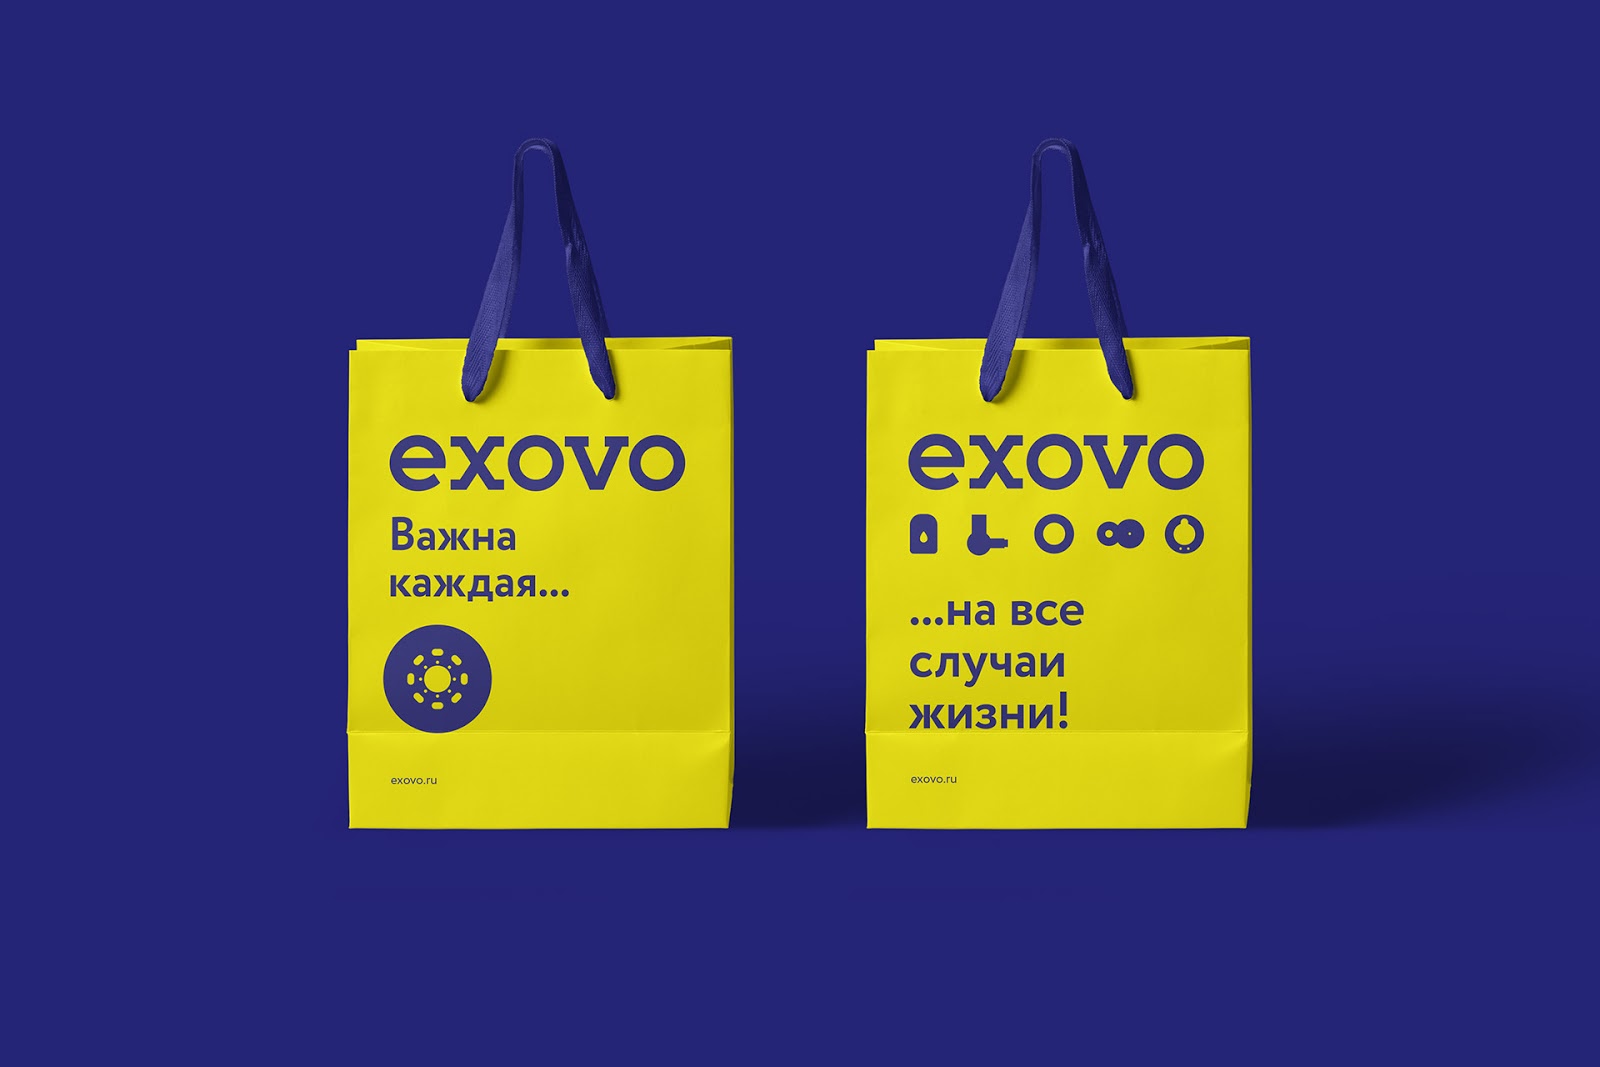 Exovo汽车配件包装设计欣赏(图10)